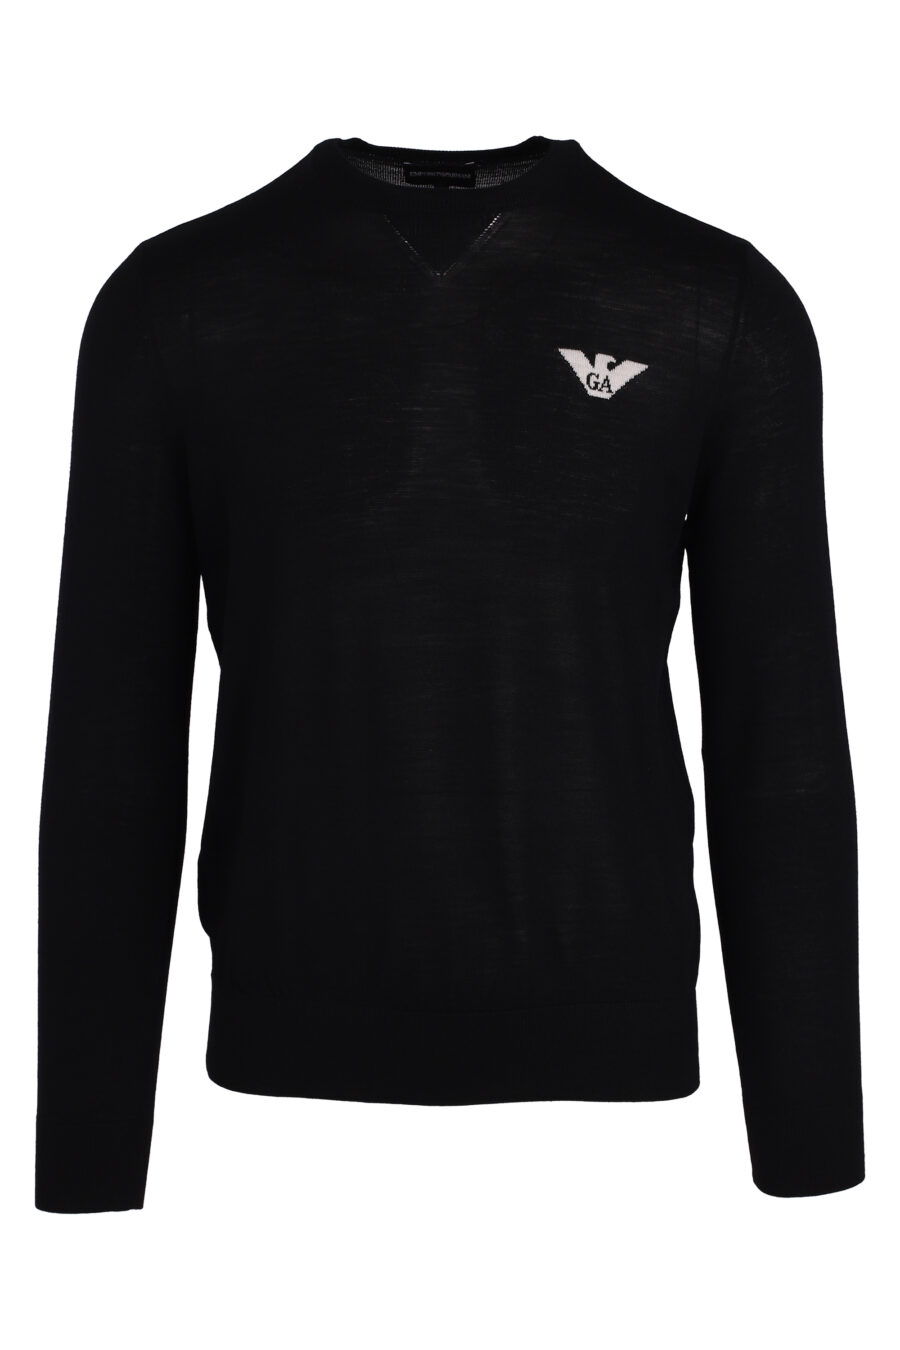 Jersey negro con logo águila blanco - IMG 4734